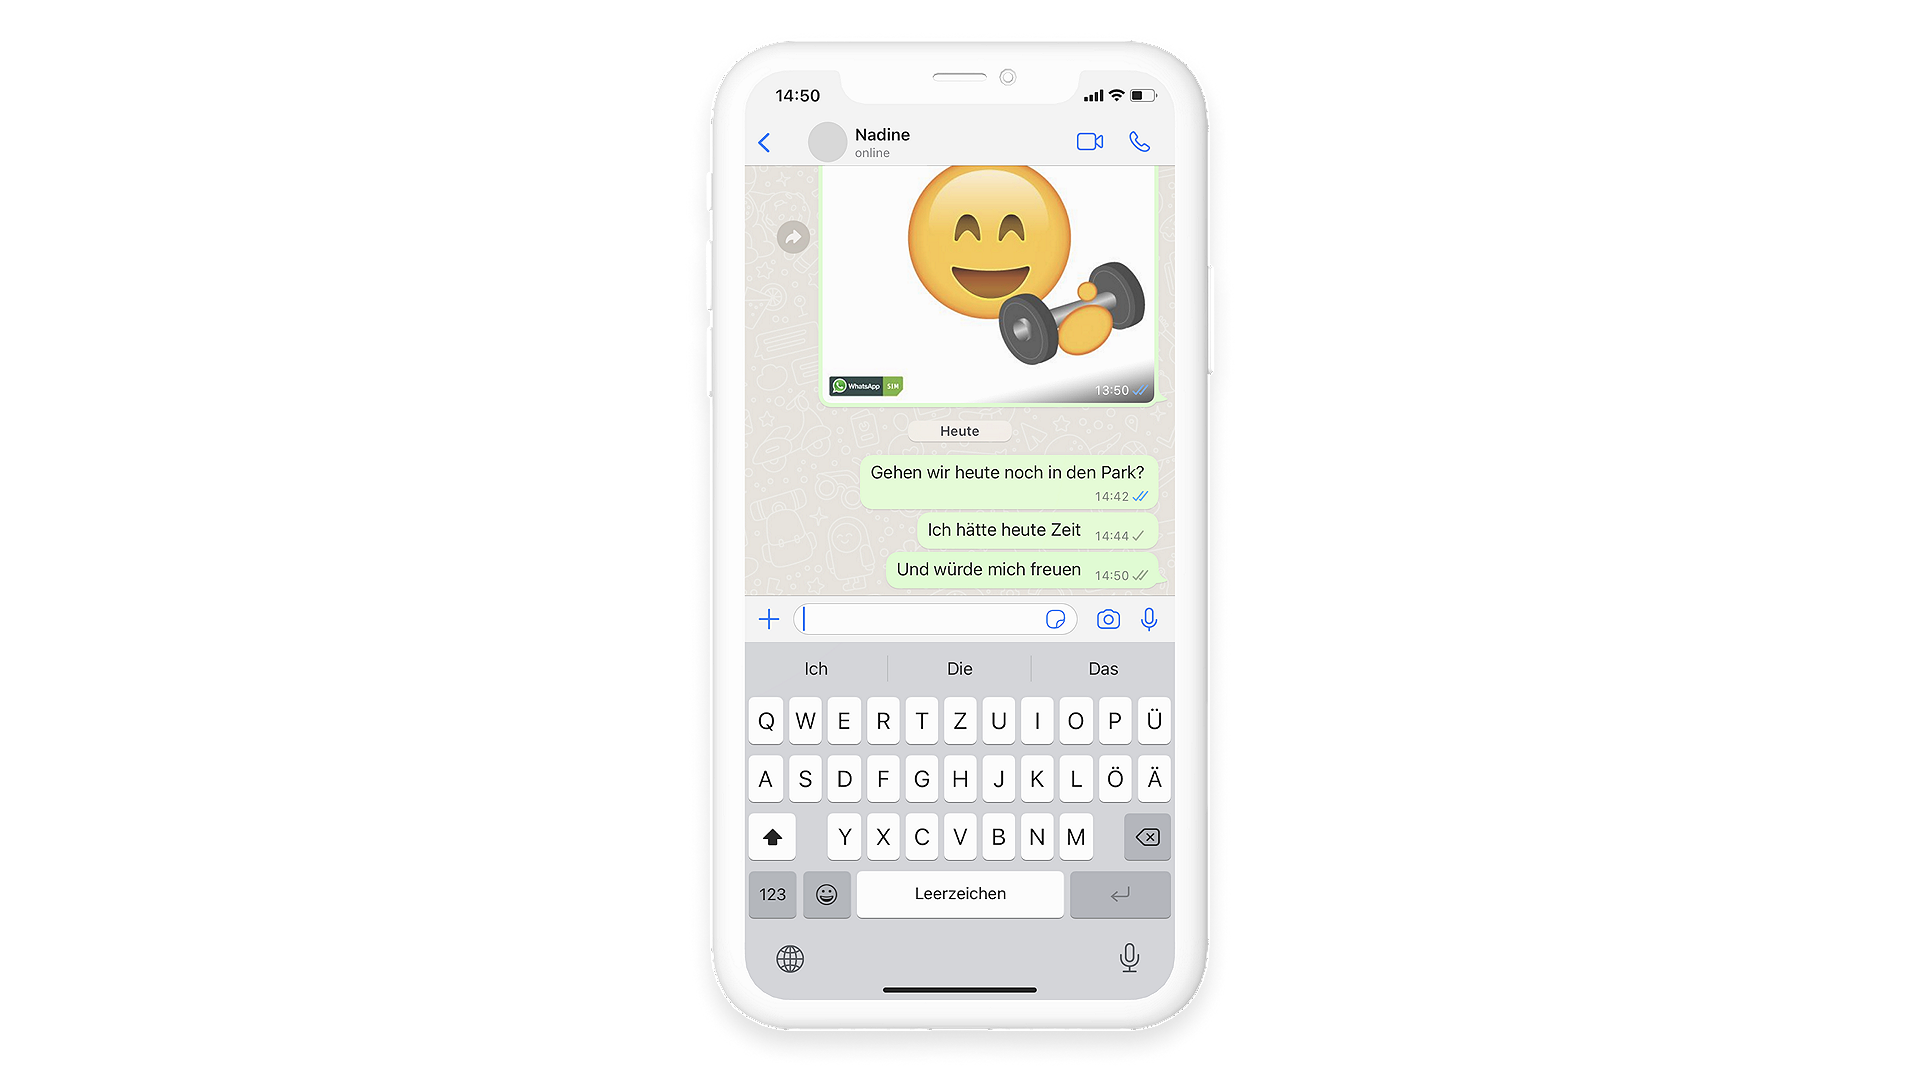 Zwei graue Häkchen bei WhatsApp Nachricht im Gruppen-Chat stehen dafür, dass die Nachricht an alle Teilnehmer zugestellt wurde